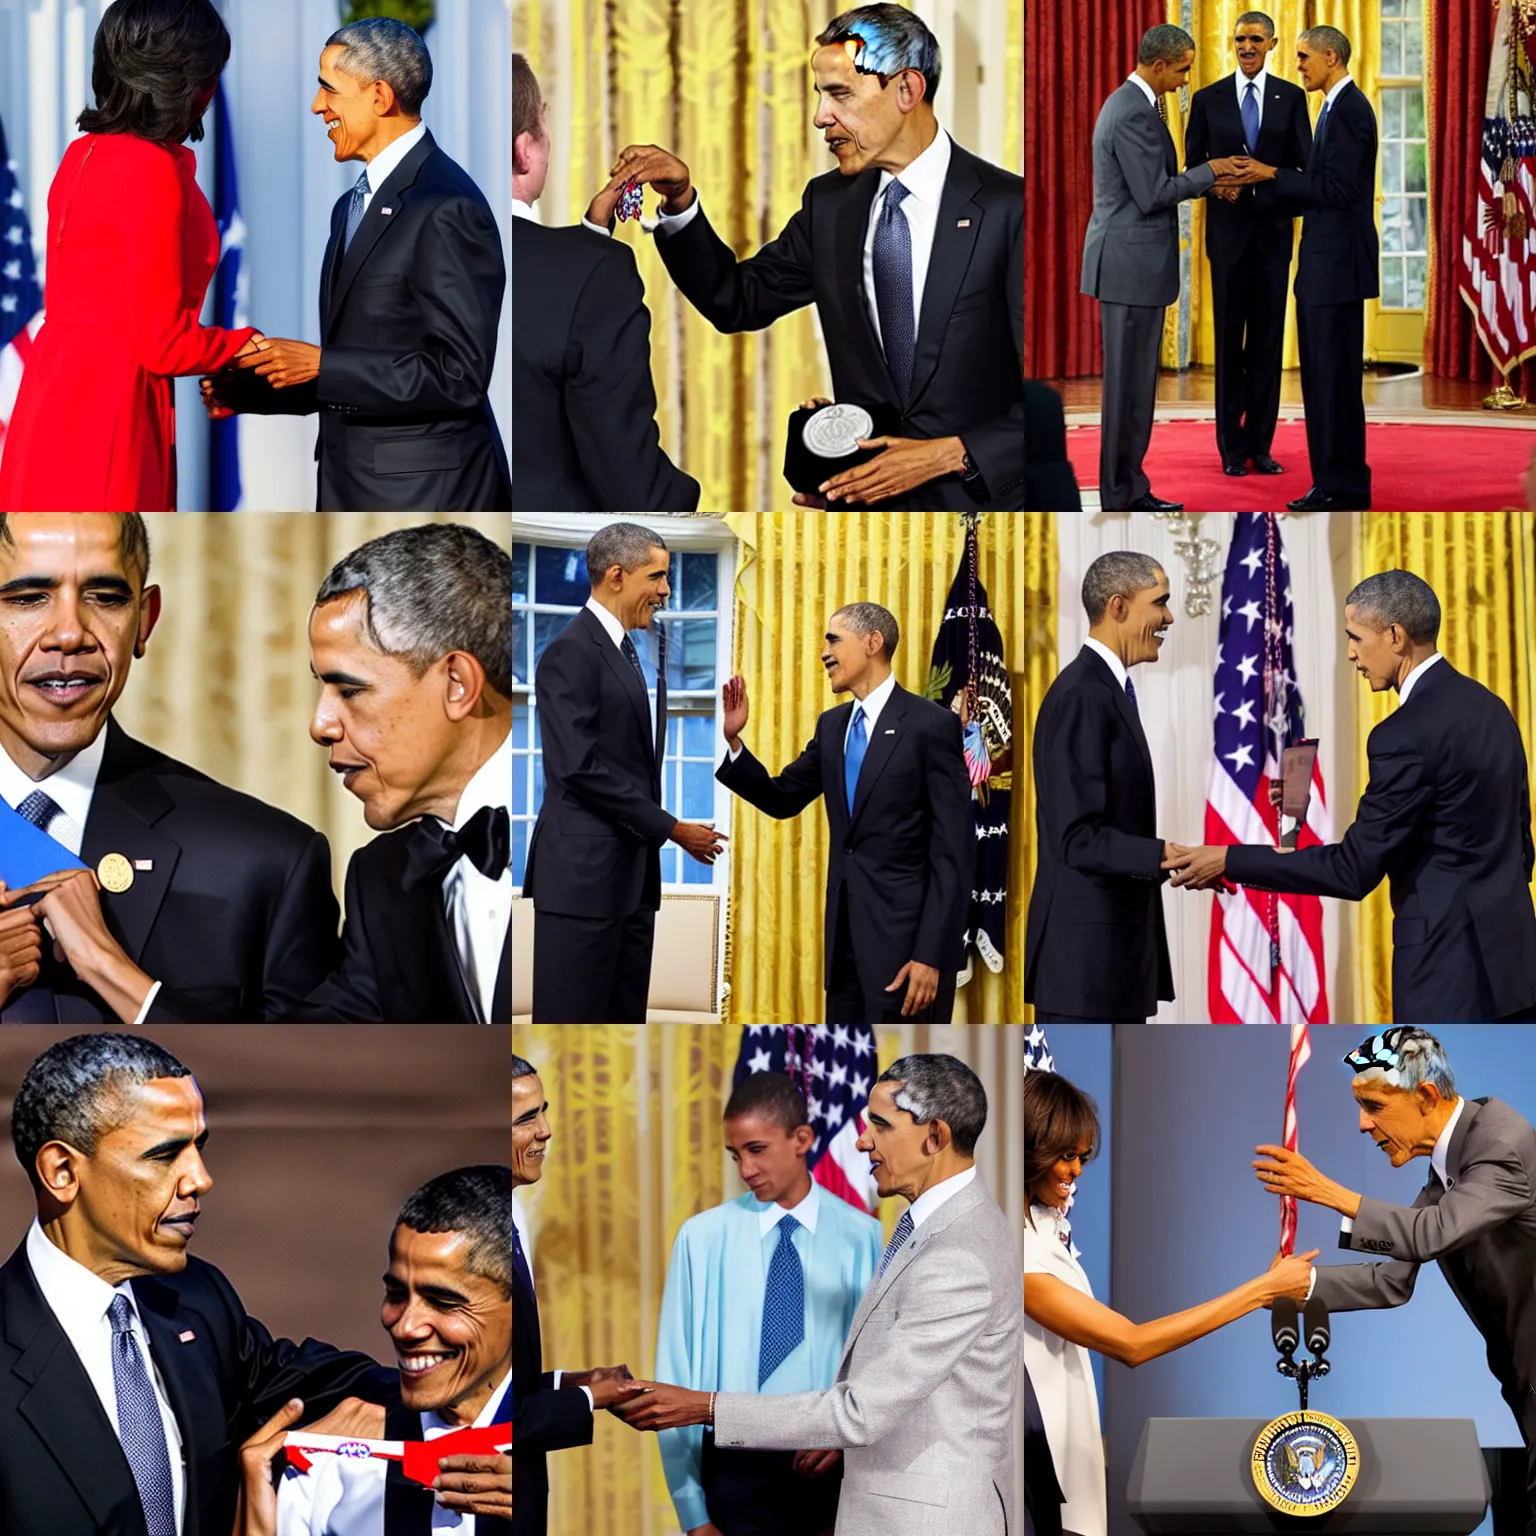 Prompt: photo of obama awarding obama a medal